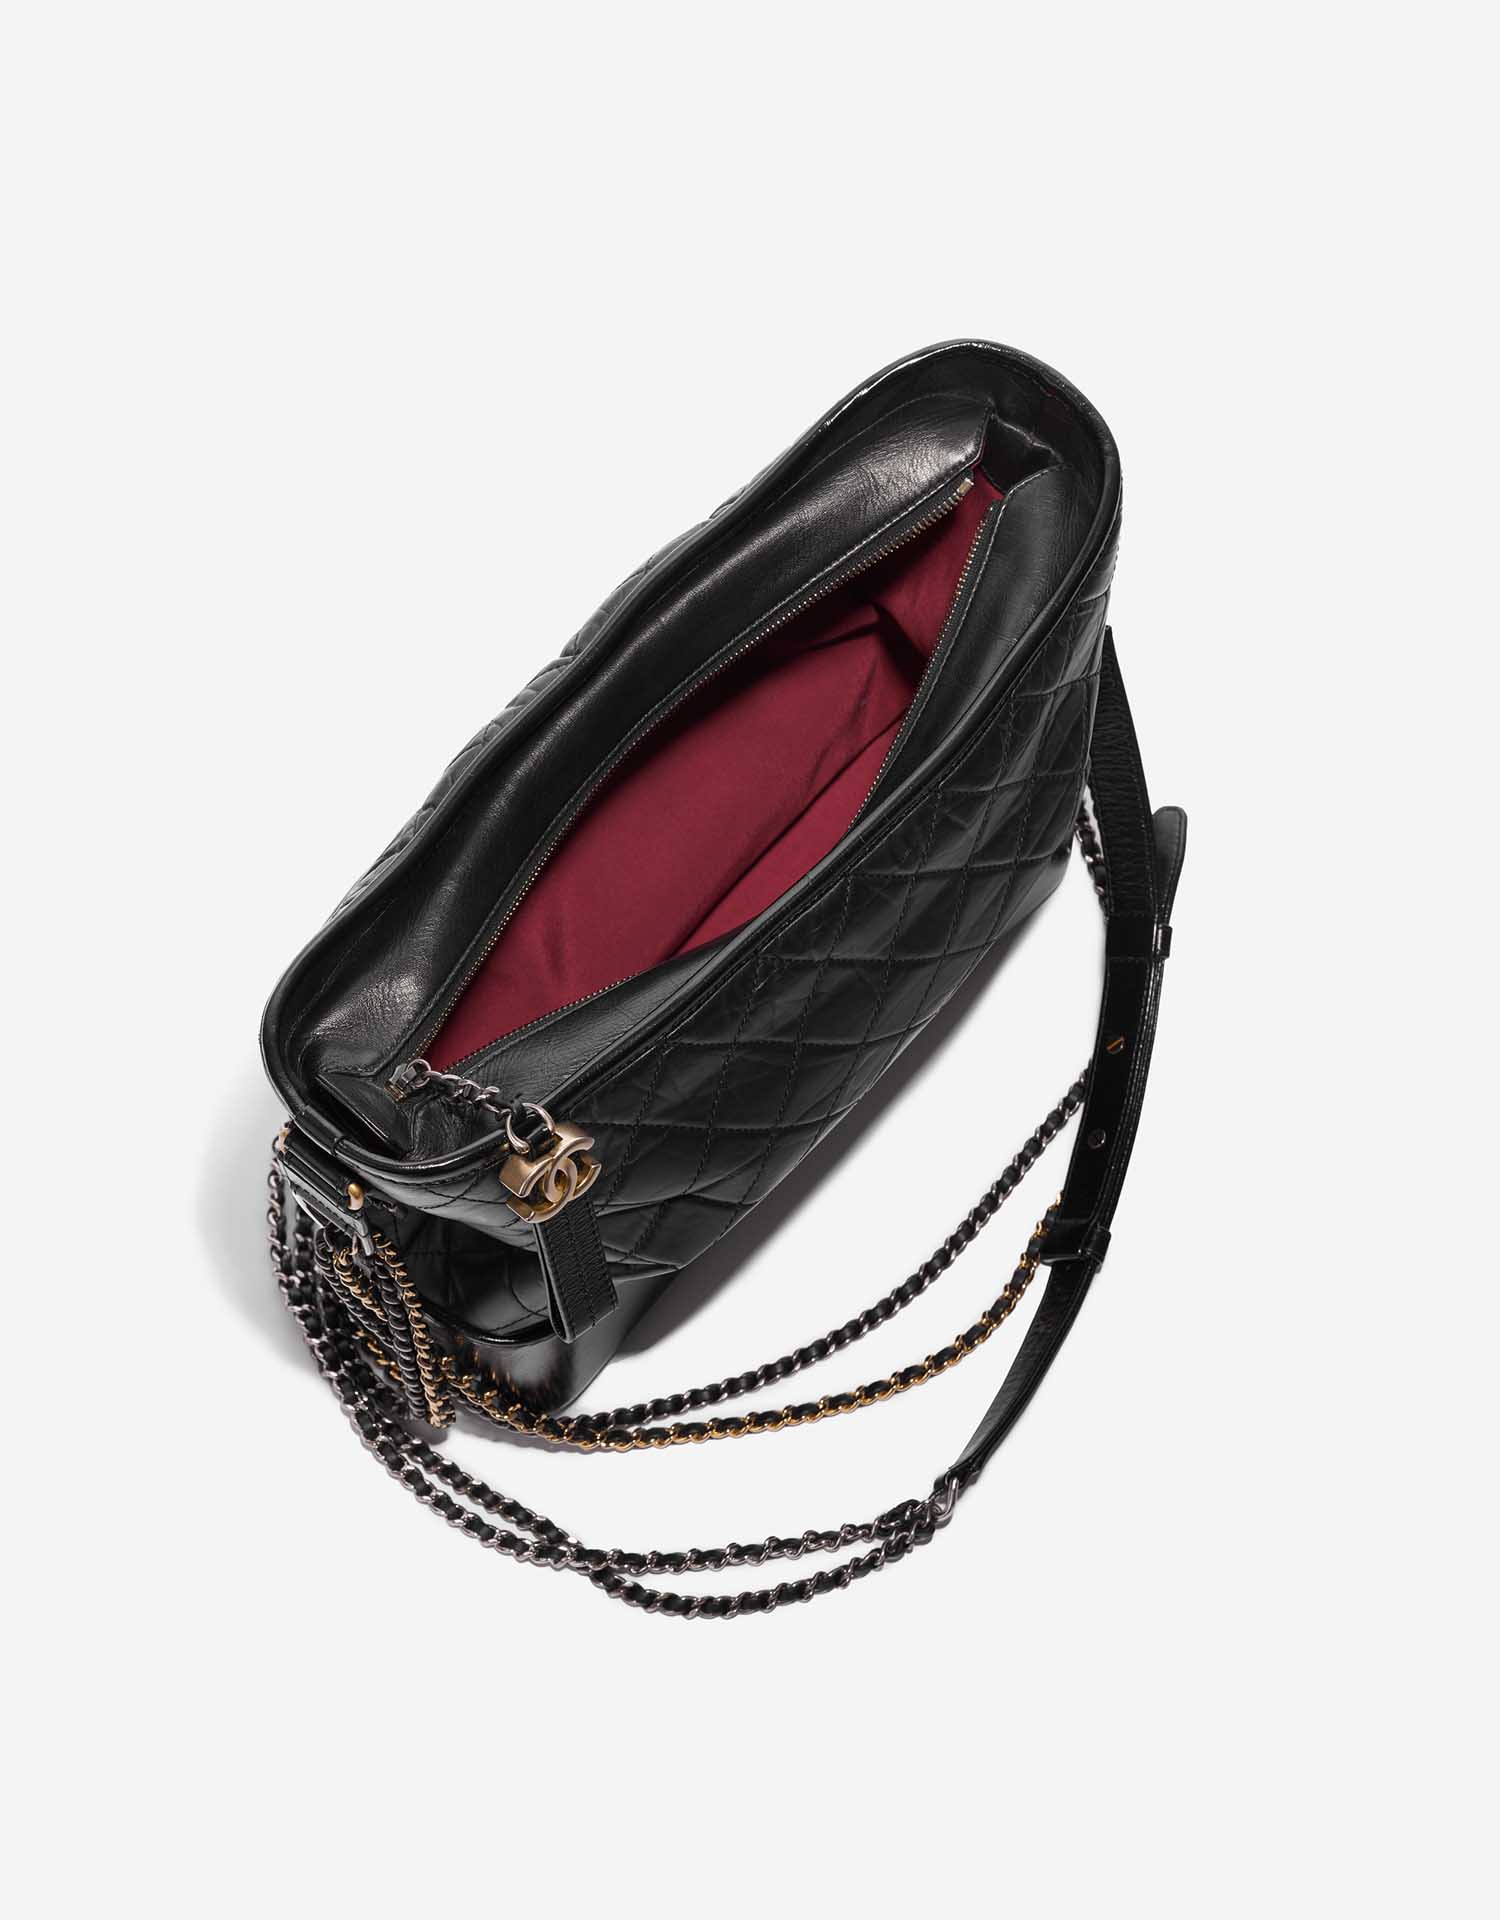 Pre-owned Chanel Tasche Gabrielle Large Kalbsleder Schwarz Schwarz Innenseite | Verkaufen Sie Ihre Designer-Tasche auf Saclab.com